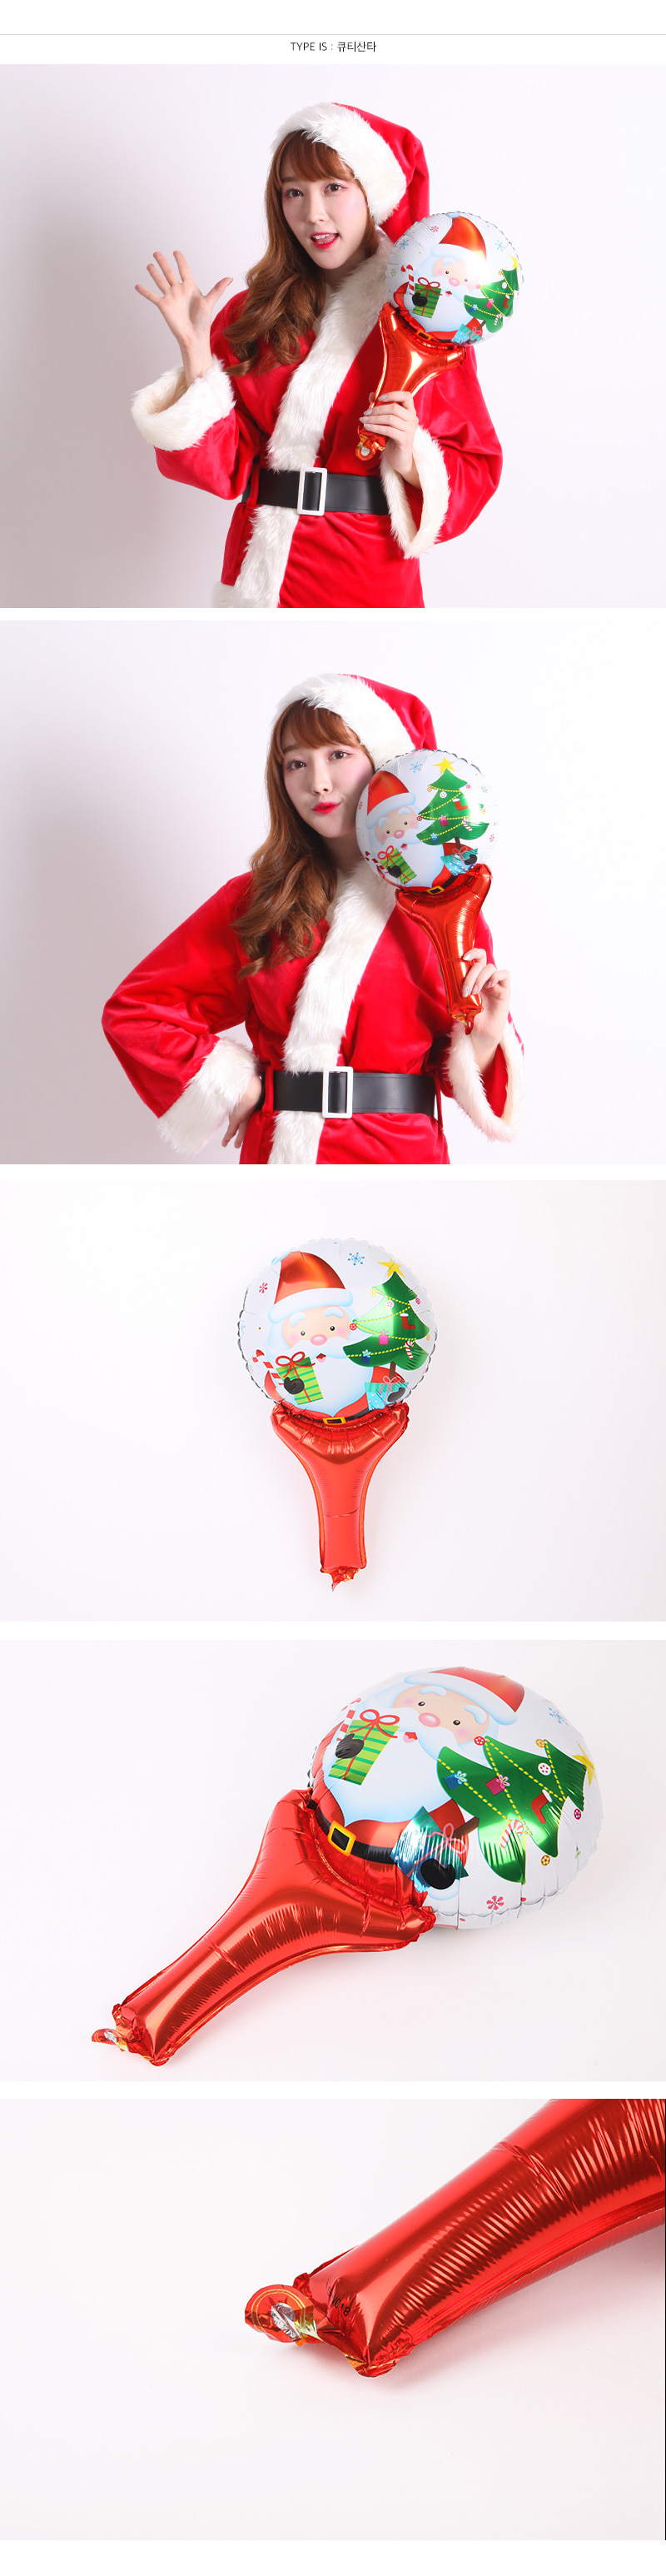 크리스마스 손잡이 은박풍선 (눈사람) 2,000원 - 파티해 인테리어, 크리스마스, 장식품, 기타소품 바보사랑 크리스마스 손잡이 은박풍선 (눈사람) 2,000원 - 파티해 인테리어, 크리스마스, 장식품, 기타소품 바보사랑